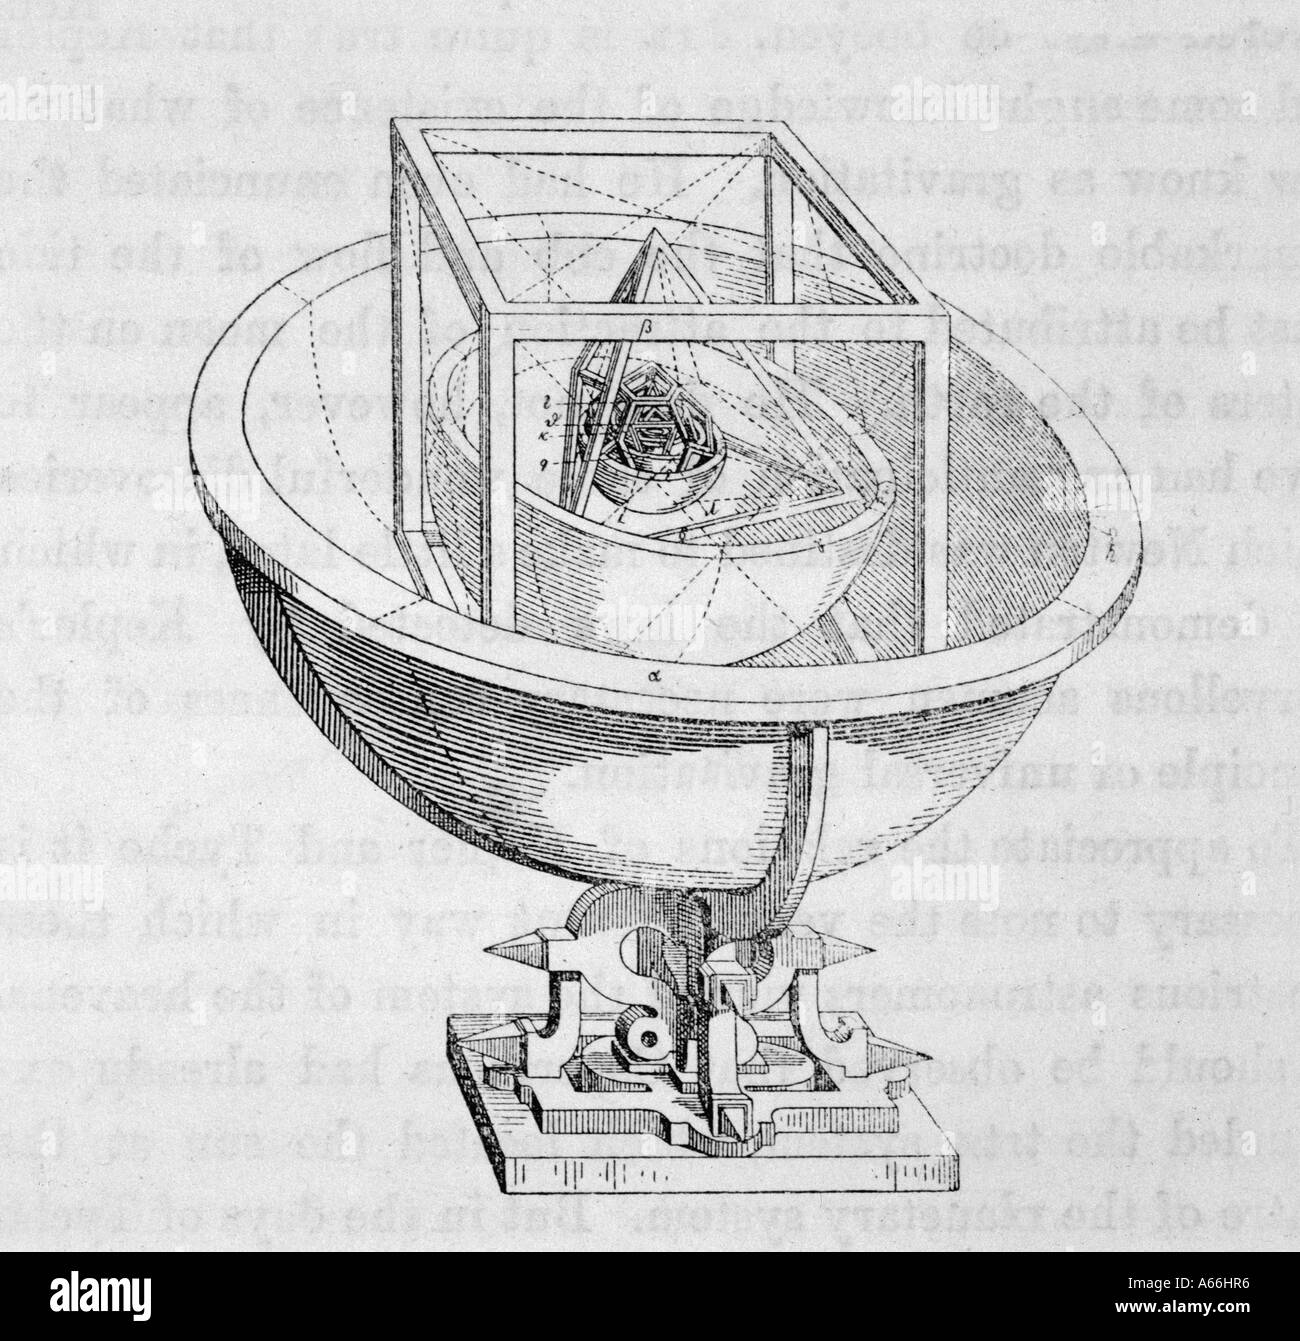 Sistema planetario kepler fotografías e imágenes de alta resolución - Alamy